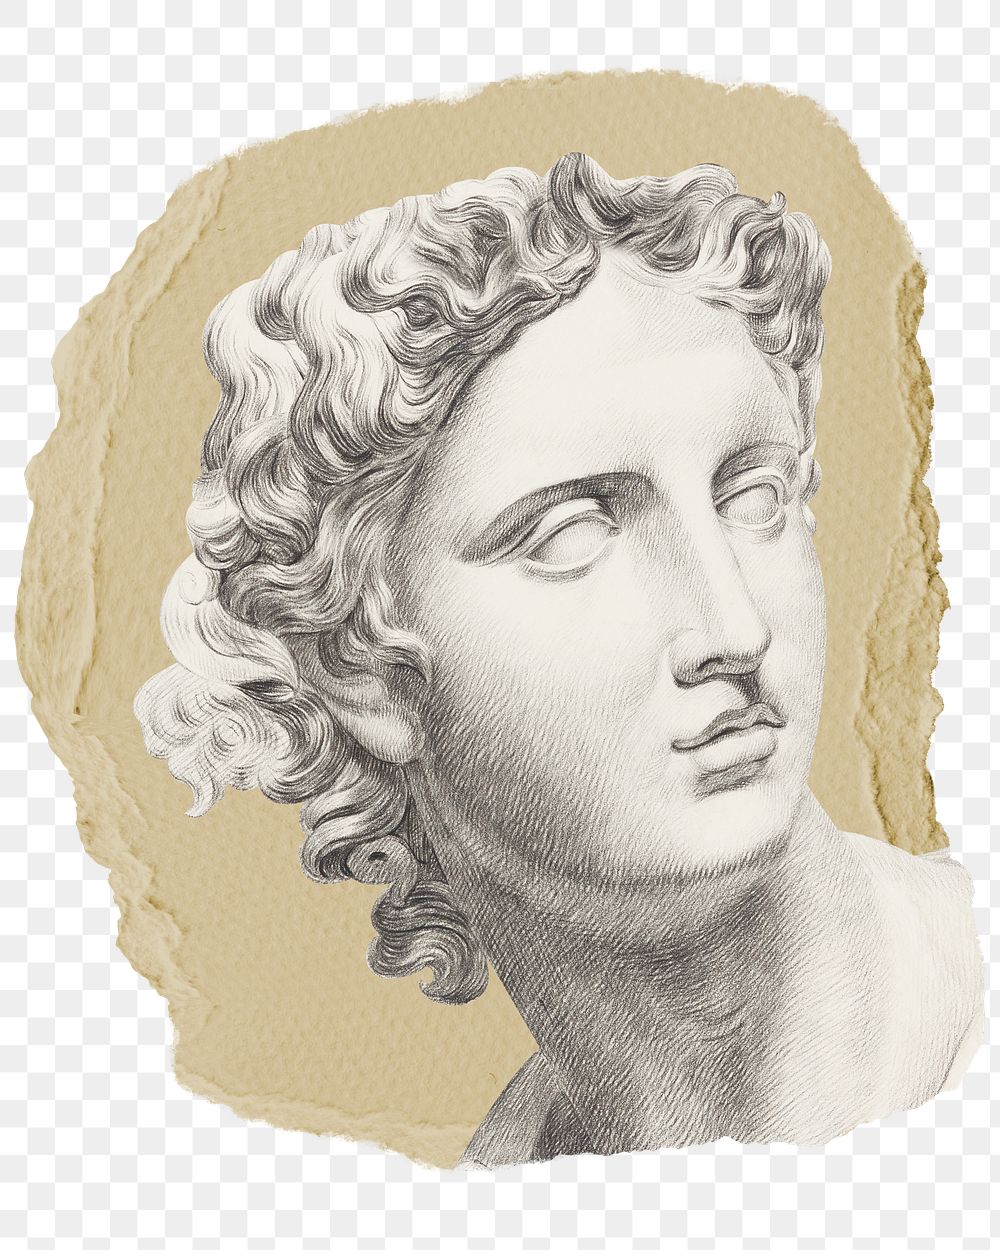 Png Greek statue sticker, vintage illustration on ripped paper, transparent background